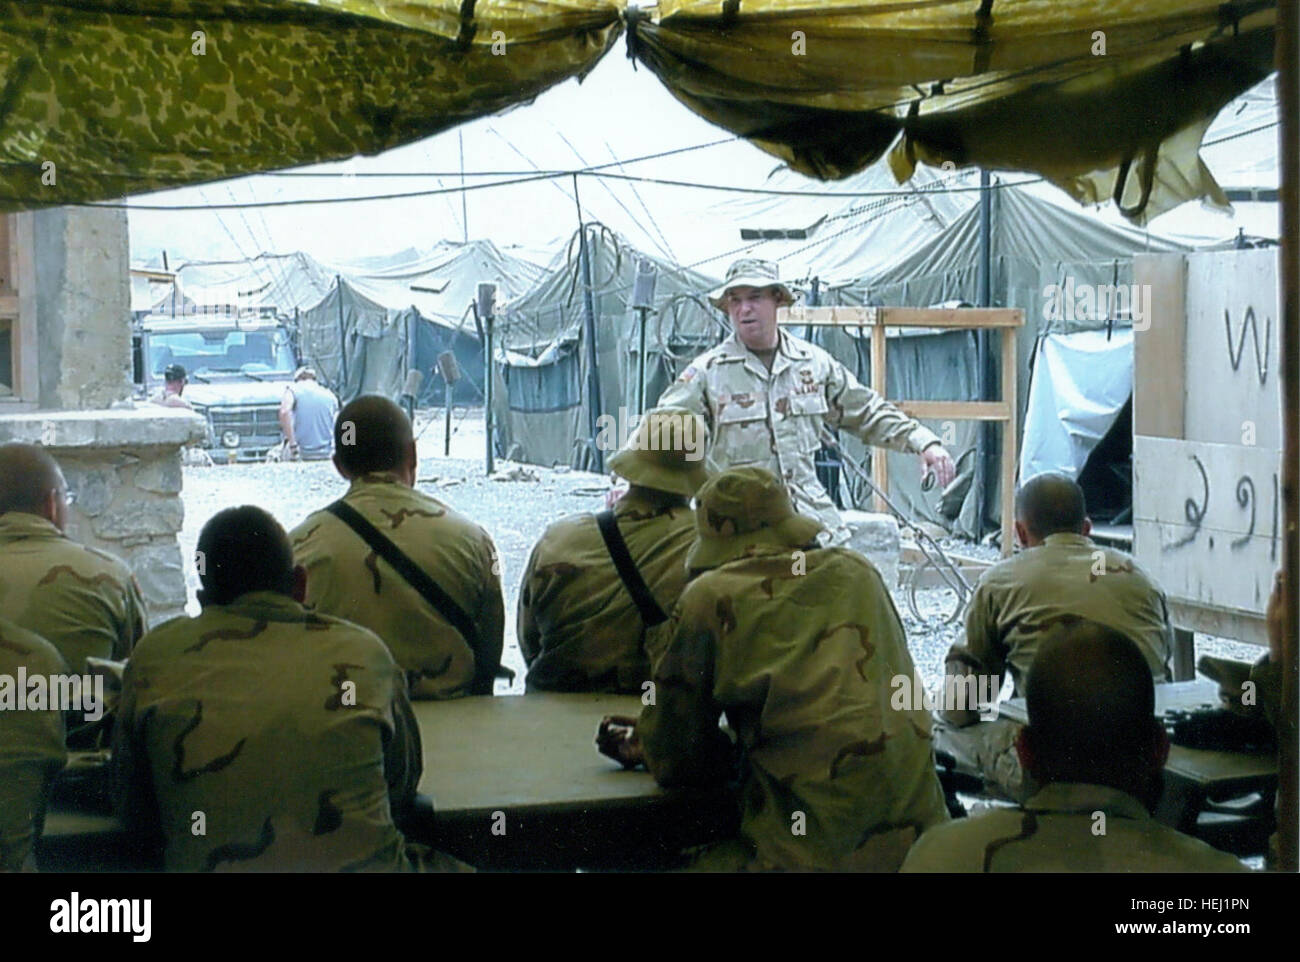 Ein persönliches Foto von Sergeant 1. Klasse Jared C. Monti, der erste Soldat Empfänger für Aktionen in Afghanistan/Operation Enduring Freedom.  Um mehr zu erfahren, besuchen Sie: http://www.army.mil/medalofhonor/monti Flickr - Sergeant der US-Armee - The Early Years, 1. Klasse Jared C. Monti, 2009 der Medal Of Honor (39) Stockfoto